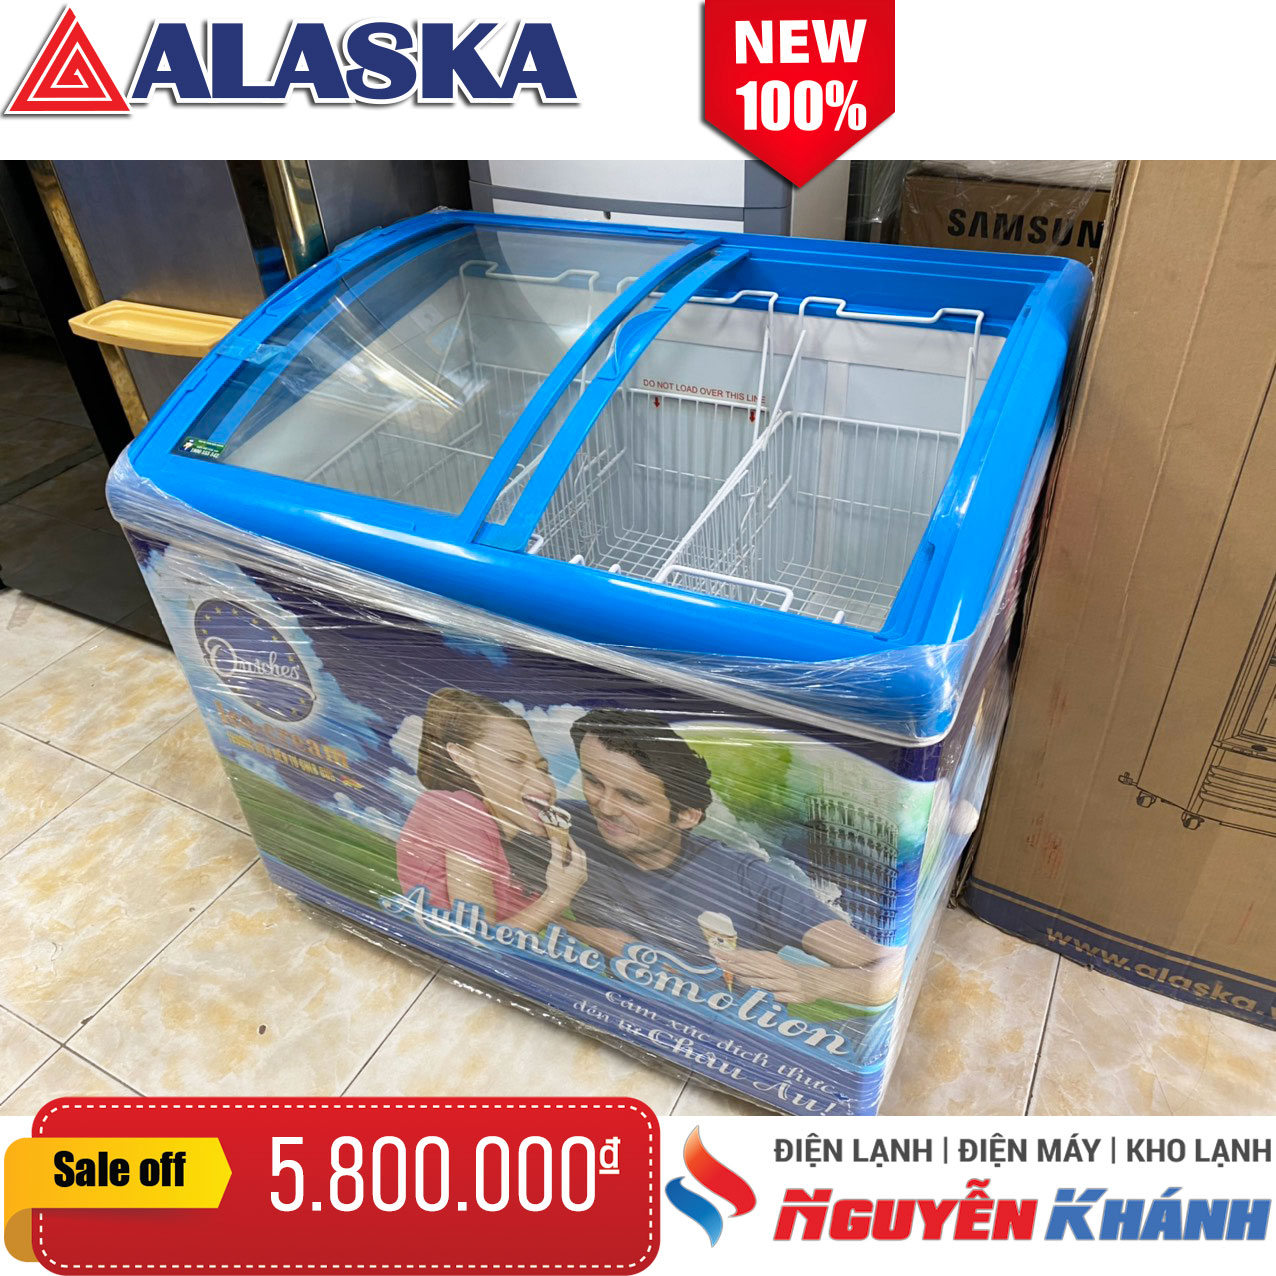 Tủ đông kem Alaska 300 lít (kính cong)